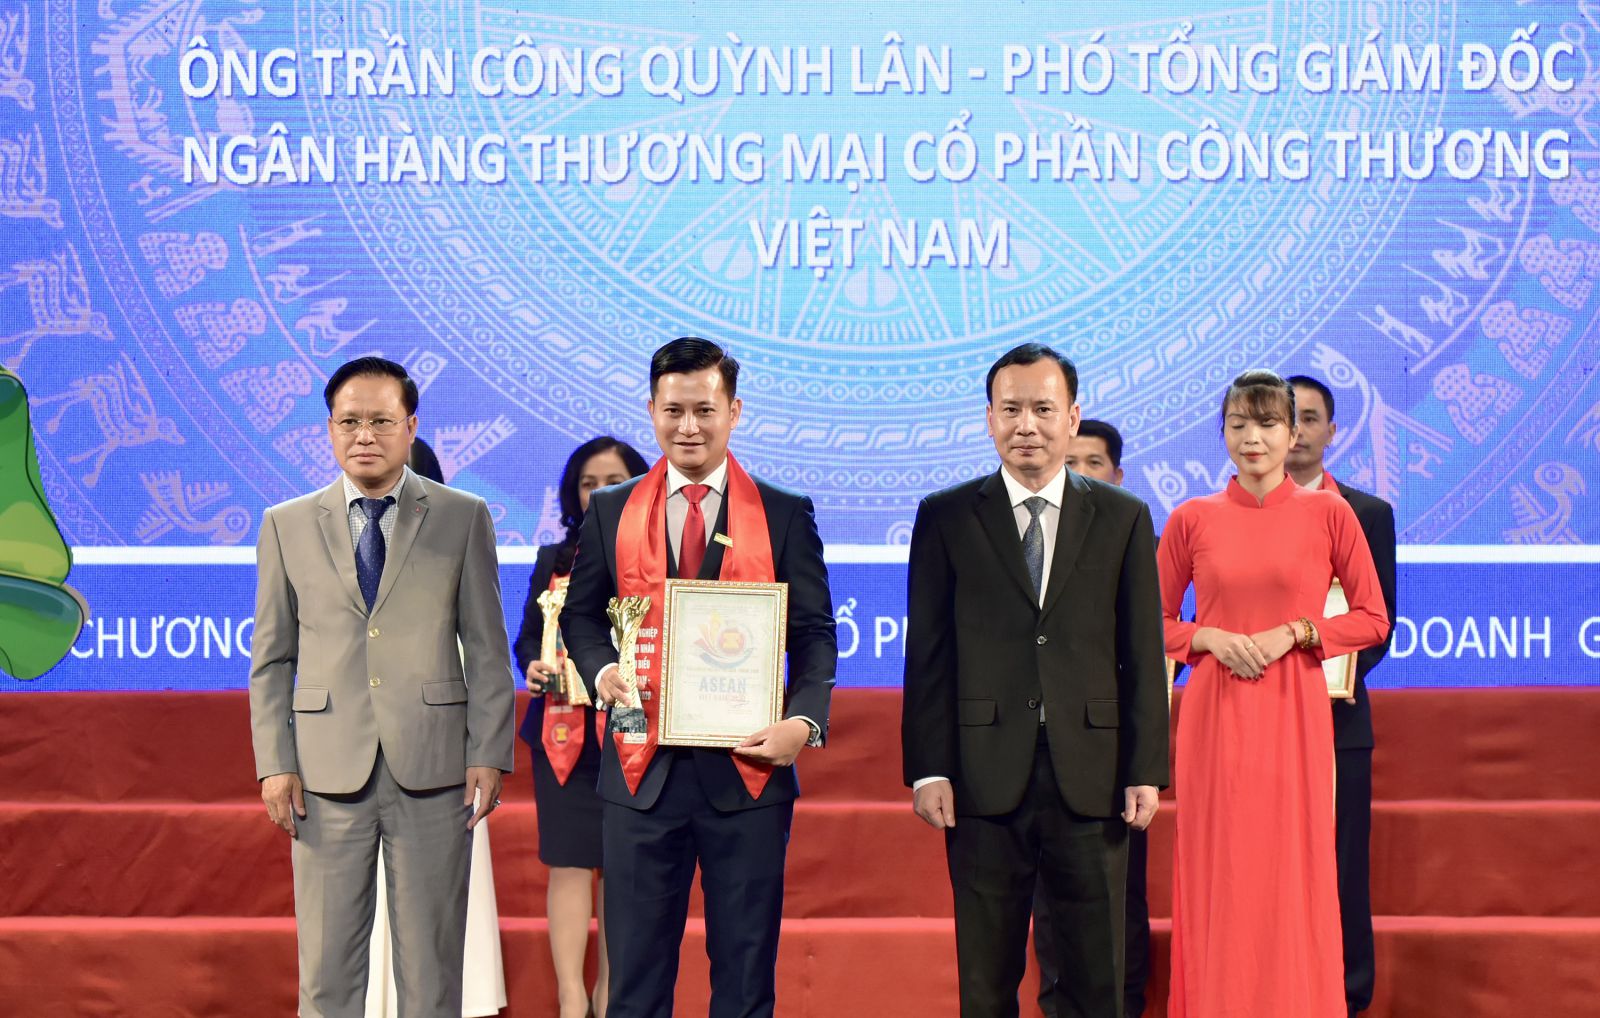 Ông Trần Công Quỳnh Lân - Phó Tổng Giám đốc VietinBank vinh dự được nhận danh hiệu “Nhà quản lý giỏi ASEAN”